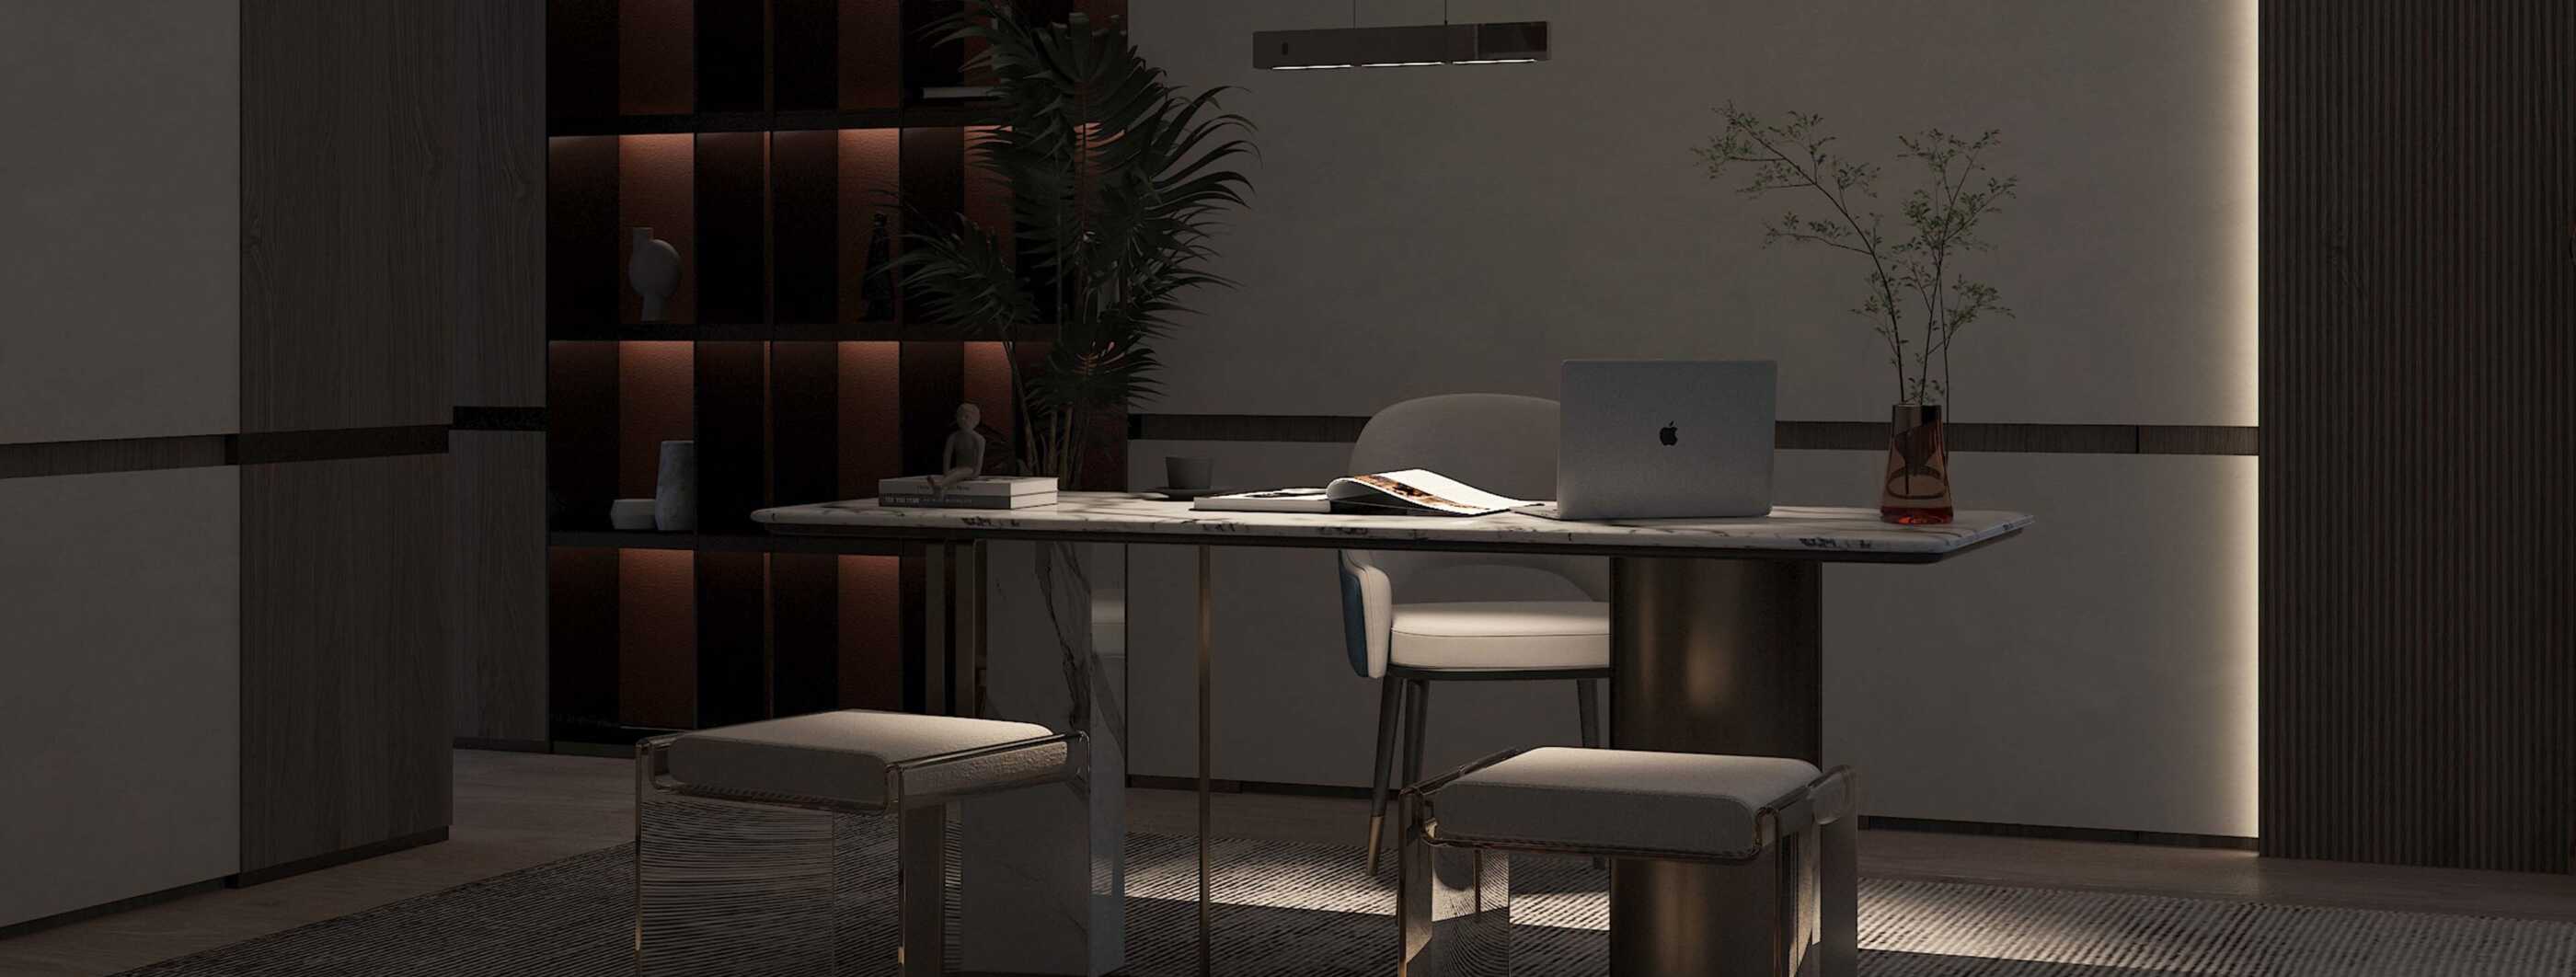 Ein stimmungsvoll beleuchteter Schreibtisch im Homeoffice, die Schreibtischoberfläche wird von einer Pendelleuchte c.Blade pendant von CHRISTOPH beleuchtet. (Foto: Christoph Kügler)